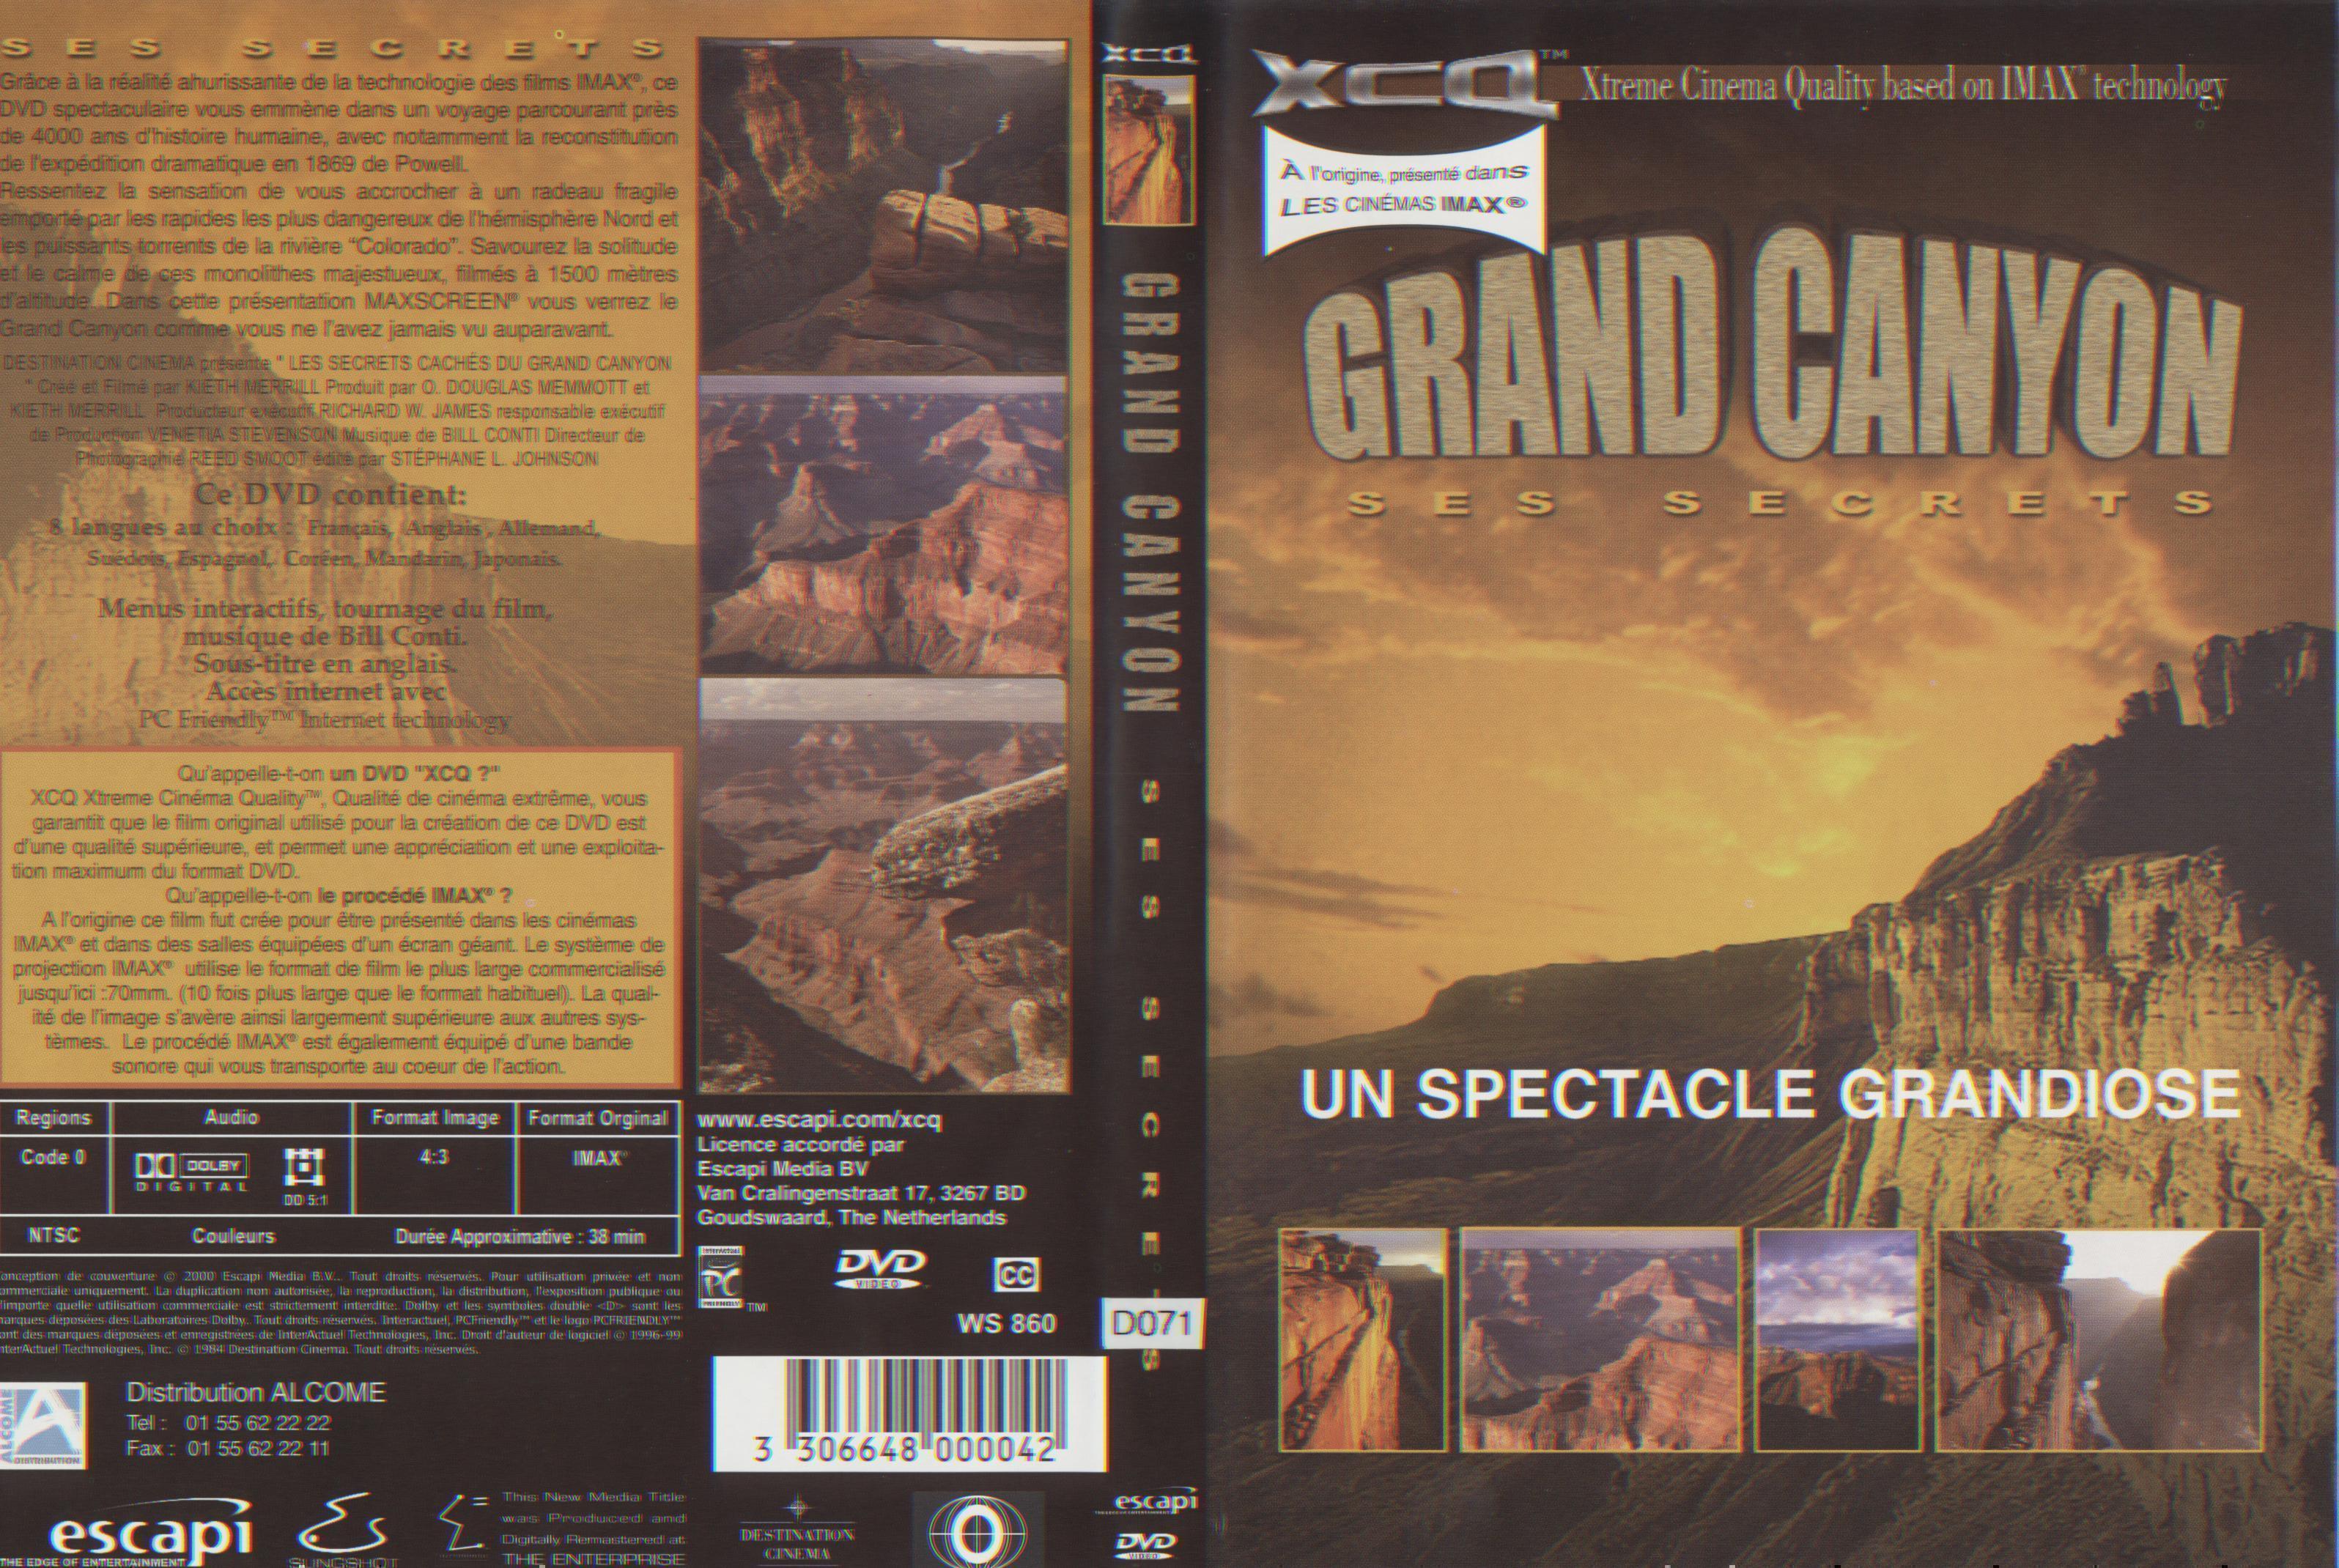 Grand Canyon Ses Secrets